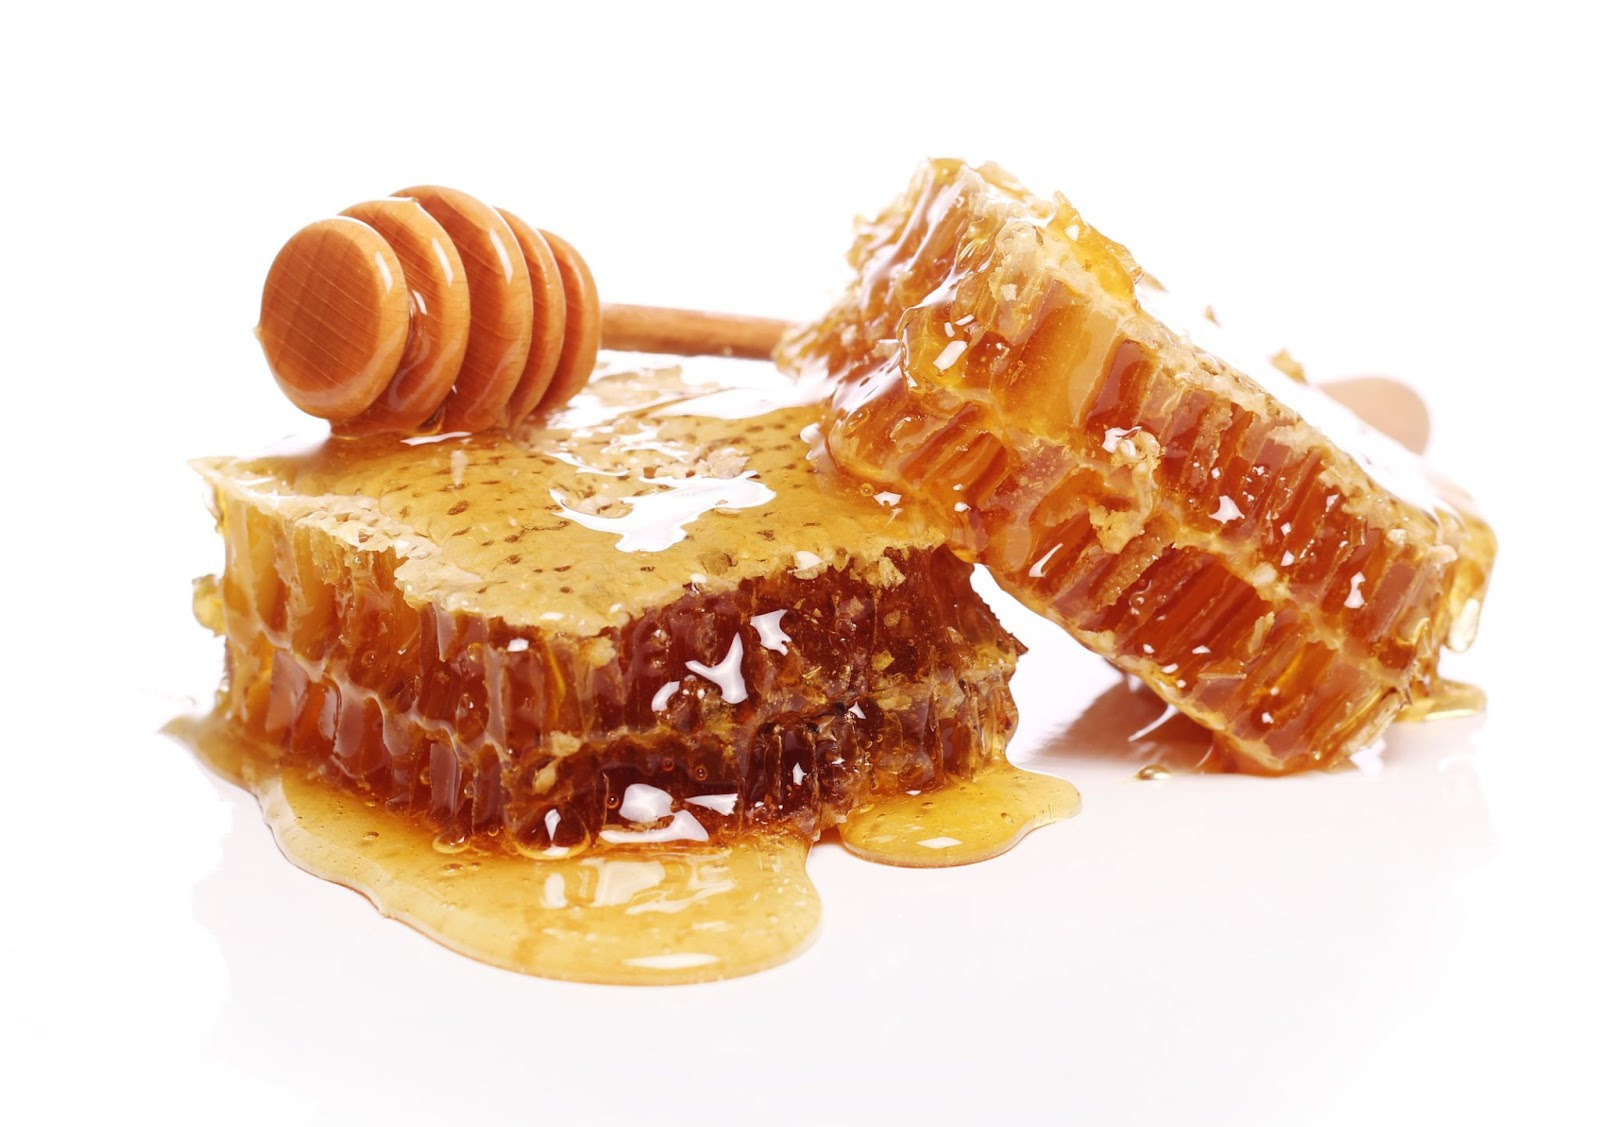 Maux de gorge : quel miel choisir ?